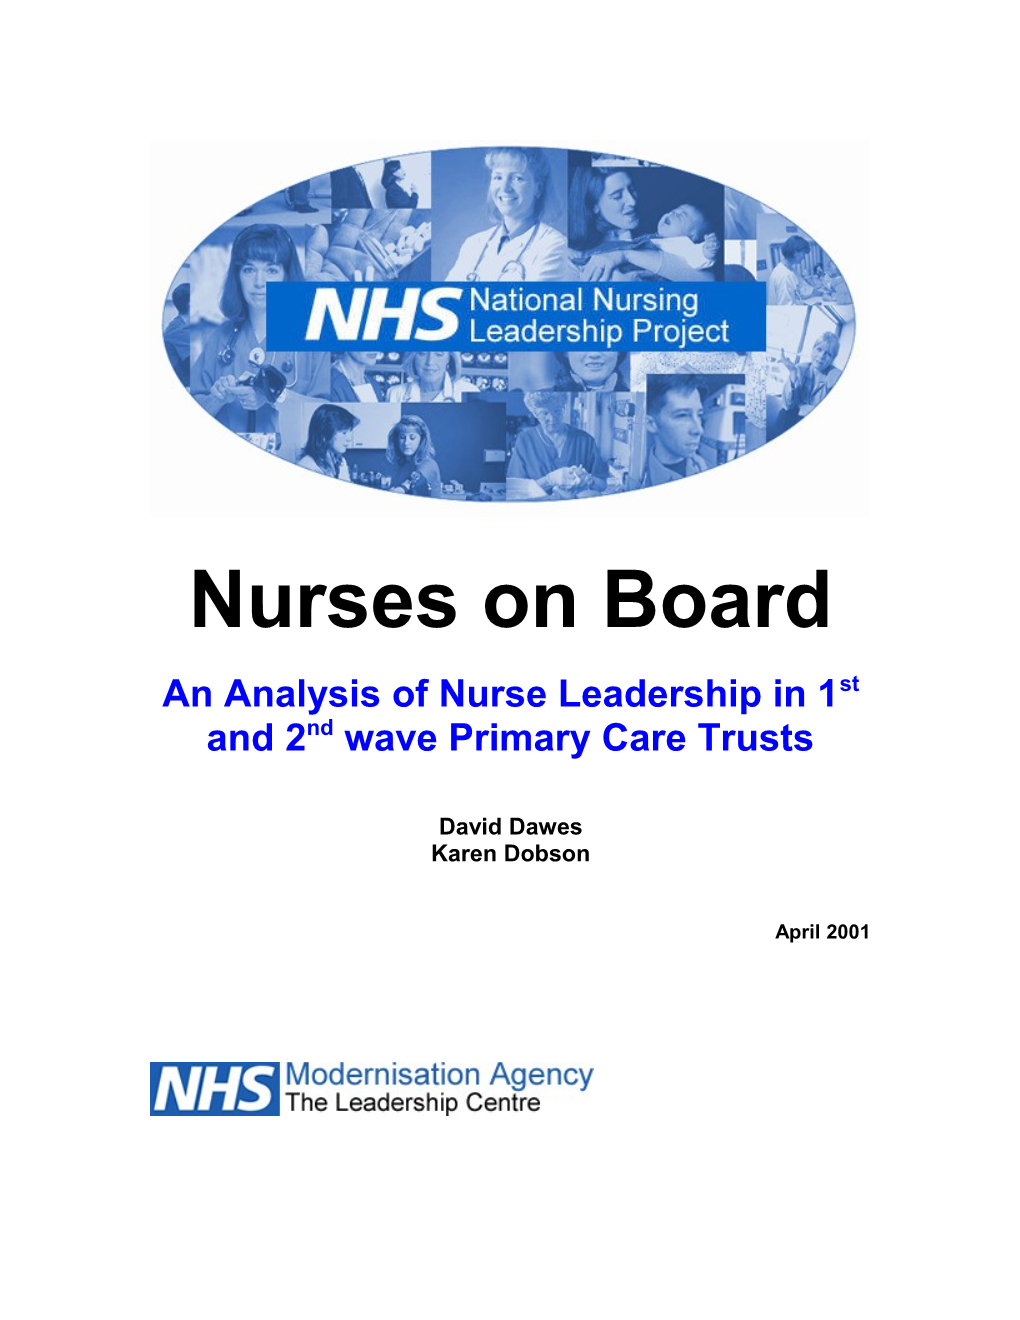 PCT Nurse Leadership – January 2000 Audit